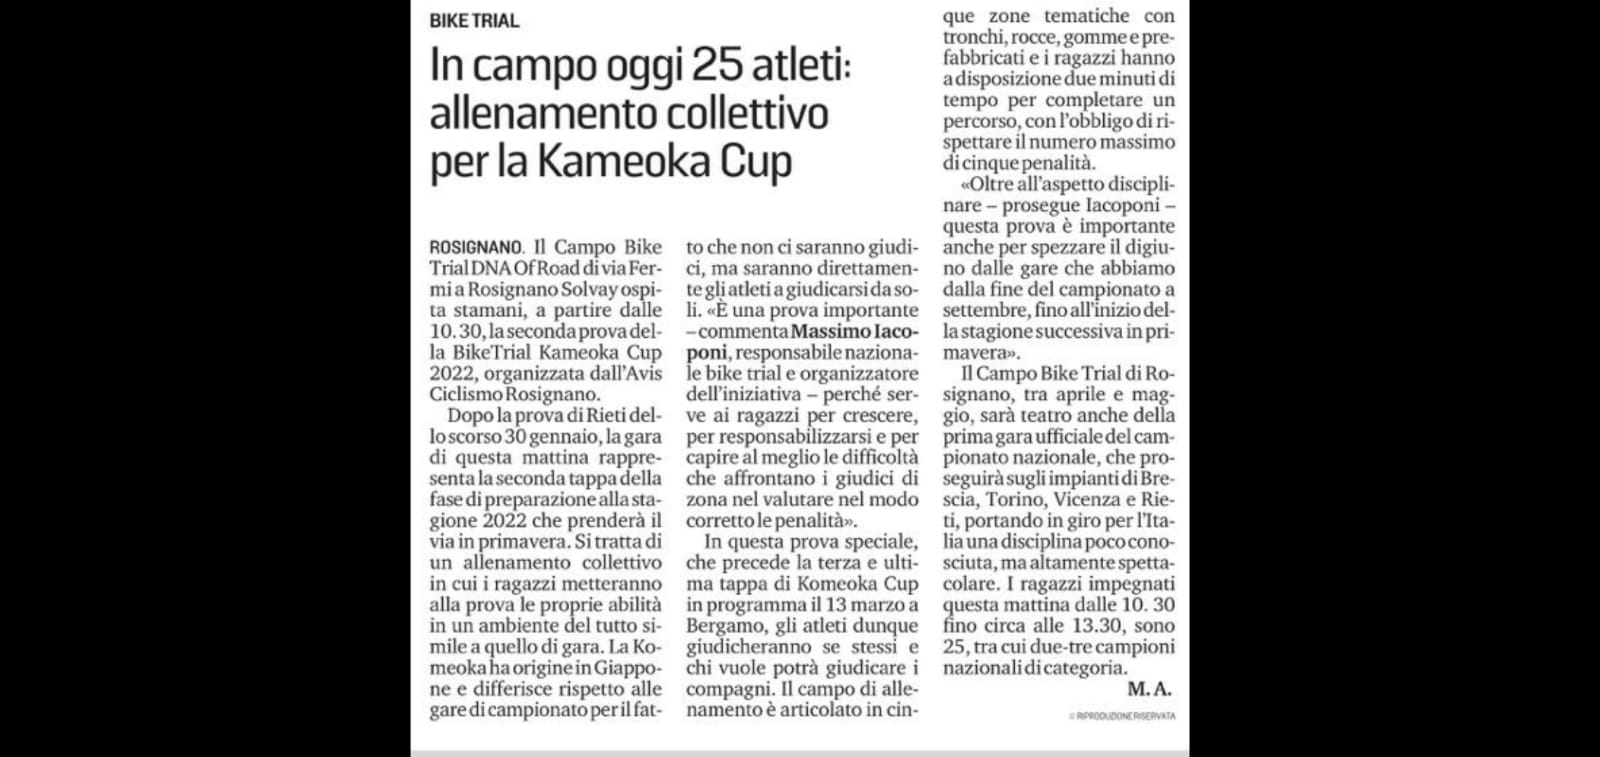 BikeTrial Kameoka Cup 2022 - Rosignano - - Kameoka Cup 2022 Rosignano